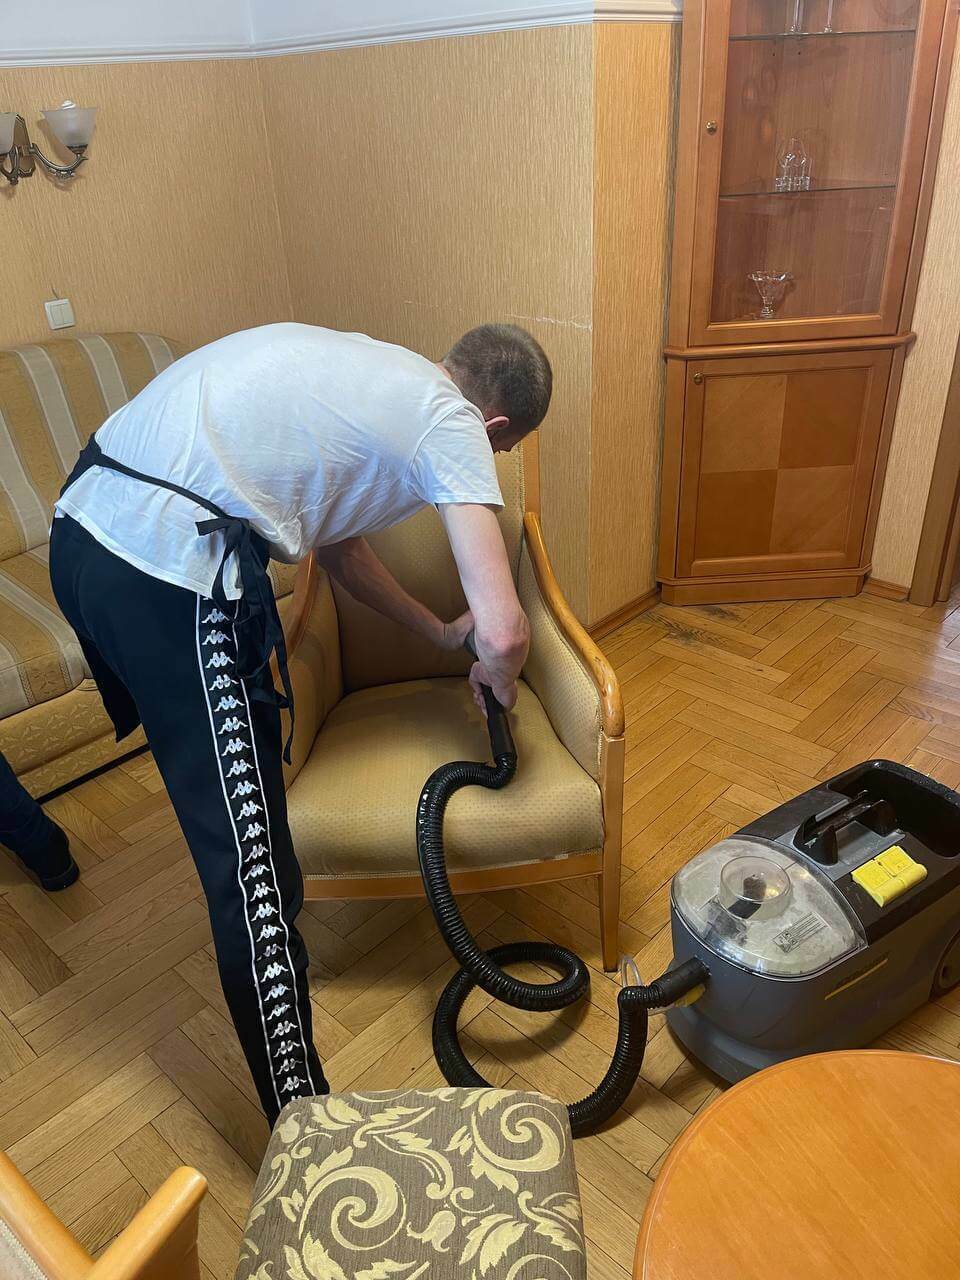 Химчистка мягкой мебели на дому в Москве заказать чистку дивана цена от 450руб